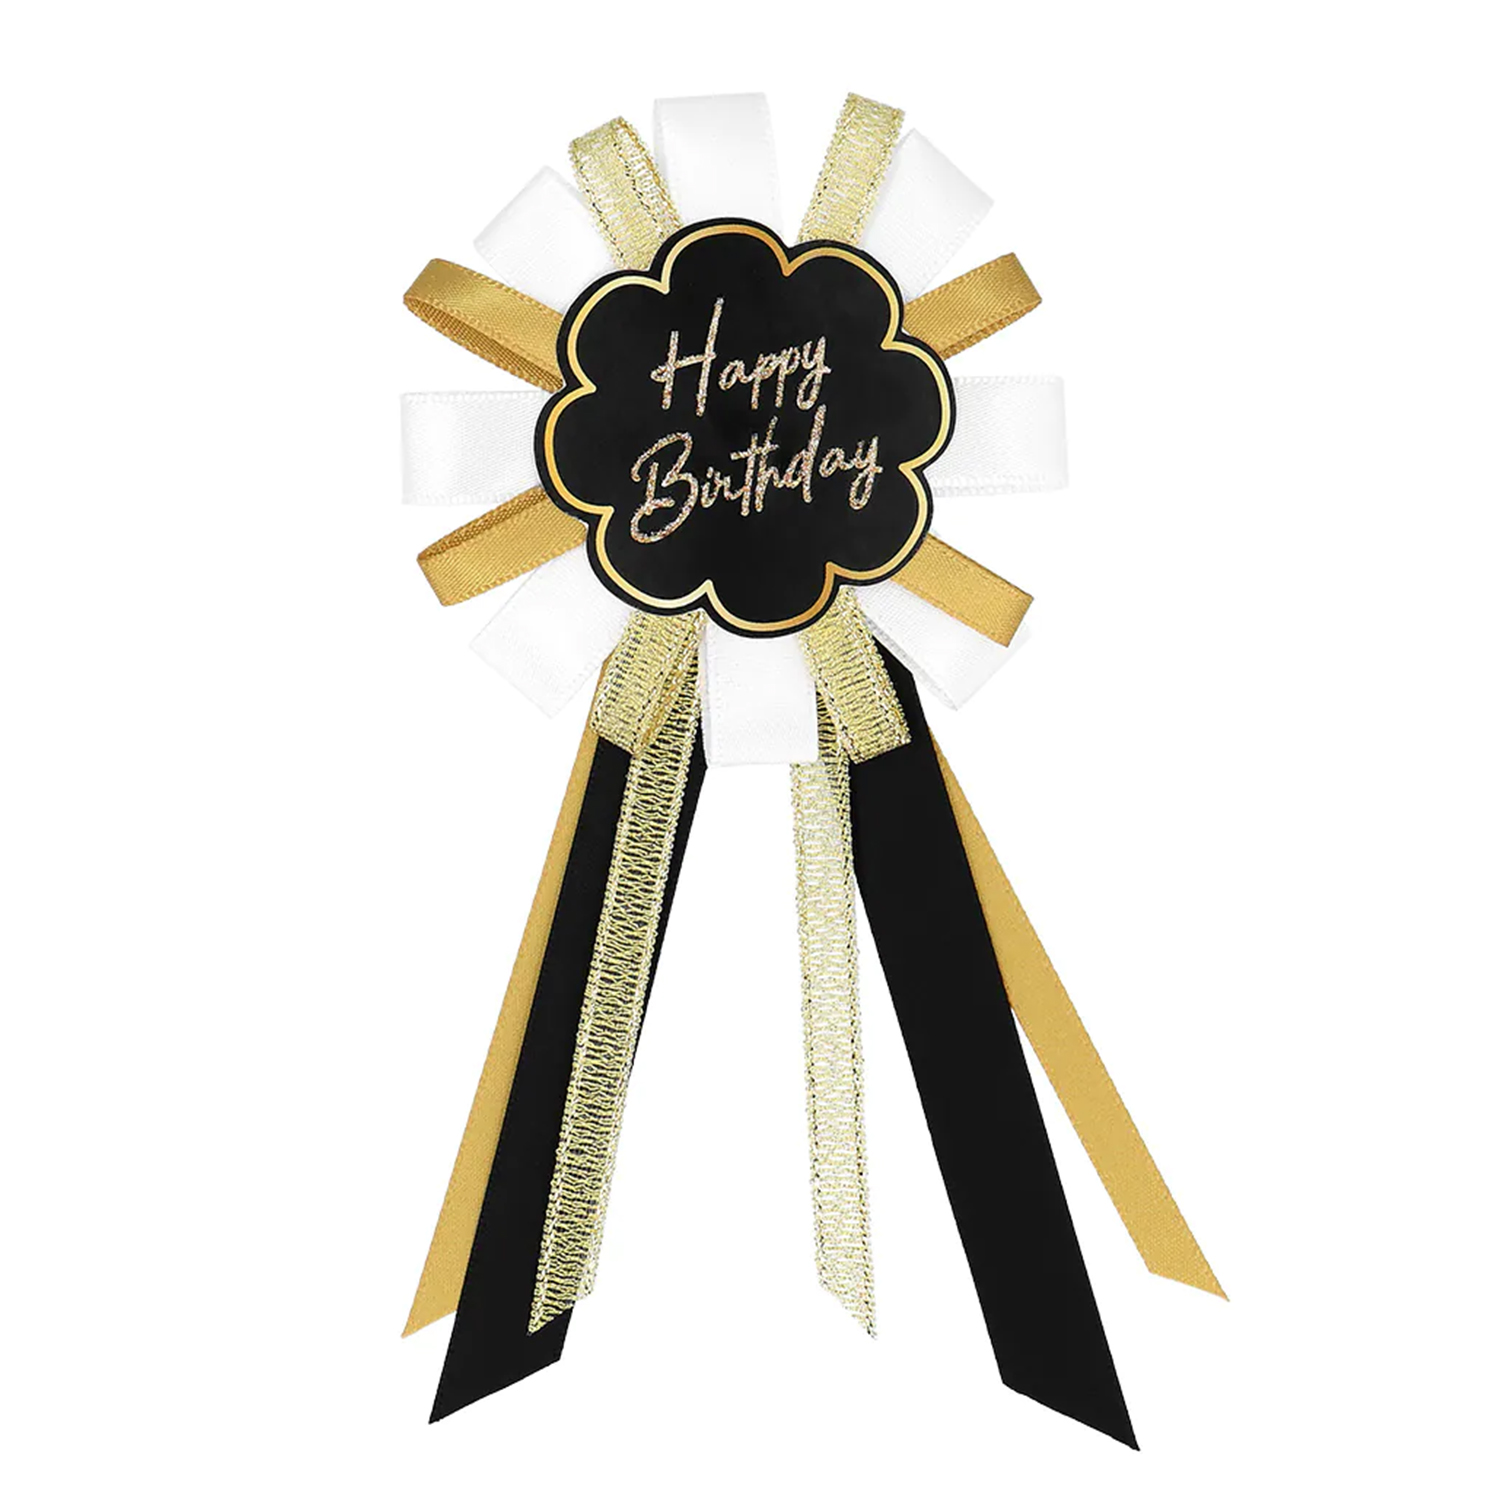 NEU Rosette/Brosche Happy-Birthday Anstecker, schwarz-gold